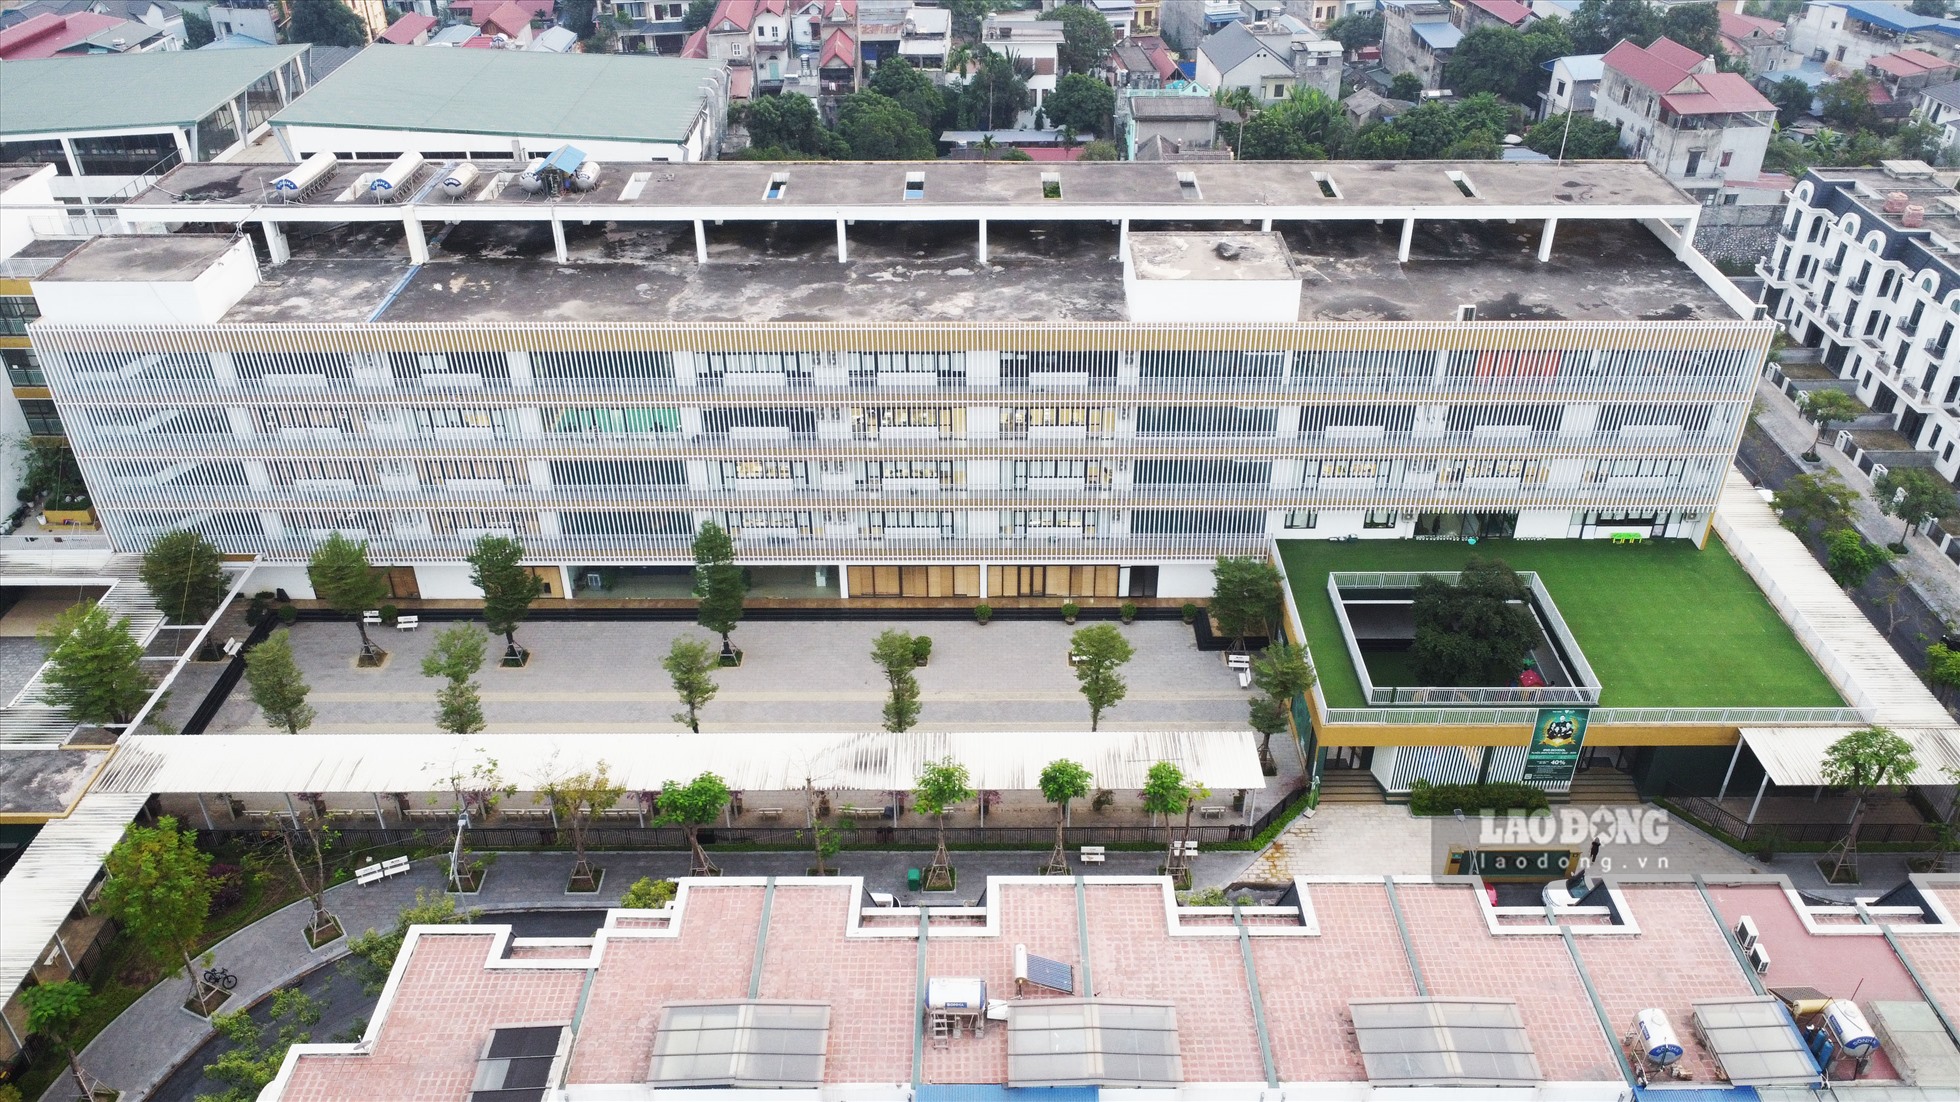 Ngày 25.12.2017, UBND tỉnh Thái Nguyên giao nhiệm vụ cho Công ty Thái Hưng nhiệm vụ lập Quy hoạch chi tiết xây dựng, tỷ lệ 1/500 Dự án Thái Hưng Eco City. Như một kịch bản đã được chuẩn bị sẵn, chỉ sau đó 2 ngày Quy hoạch chi tiết Dự án Thái Hưng Eco City chính thức được phê duyệt.